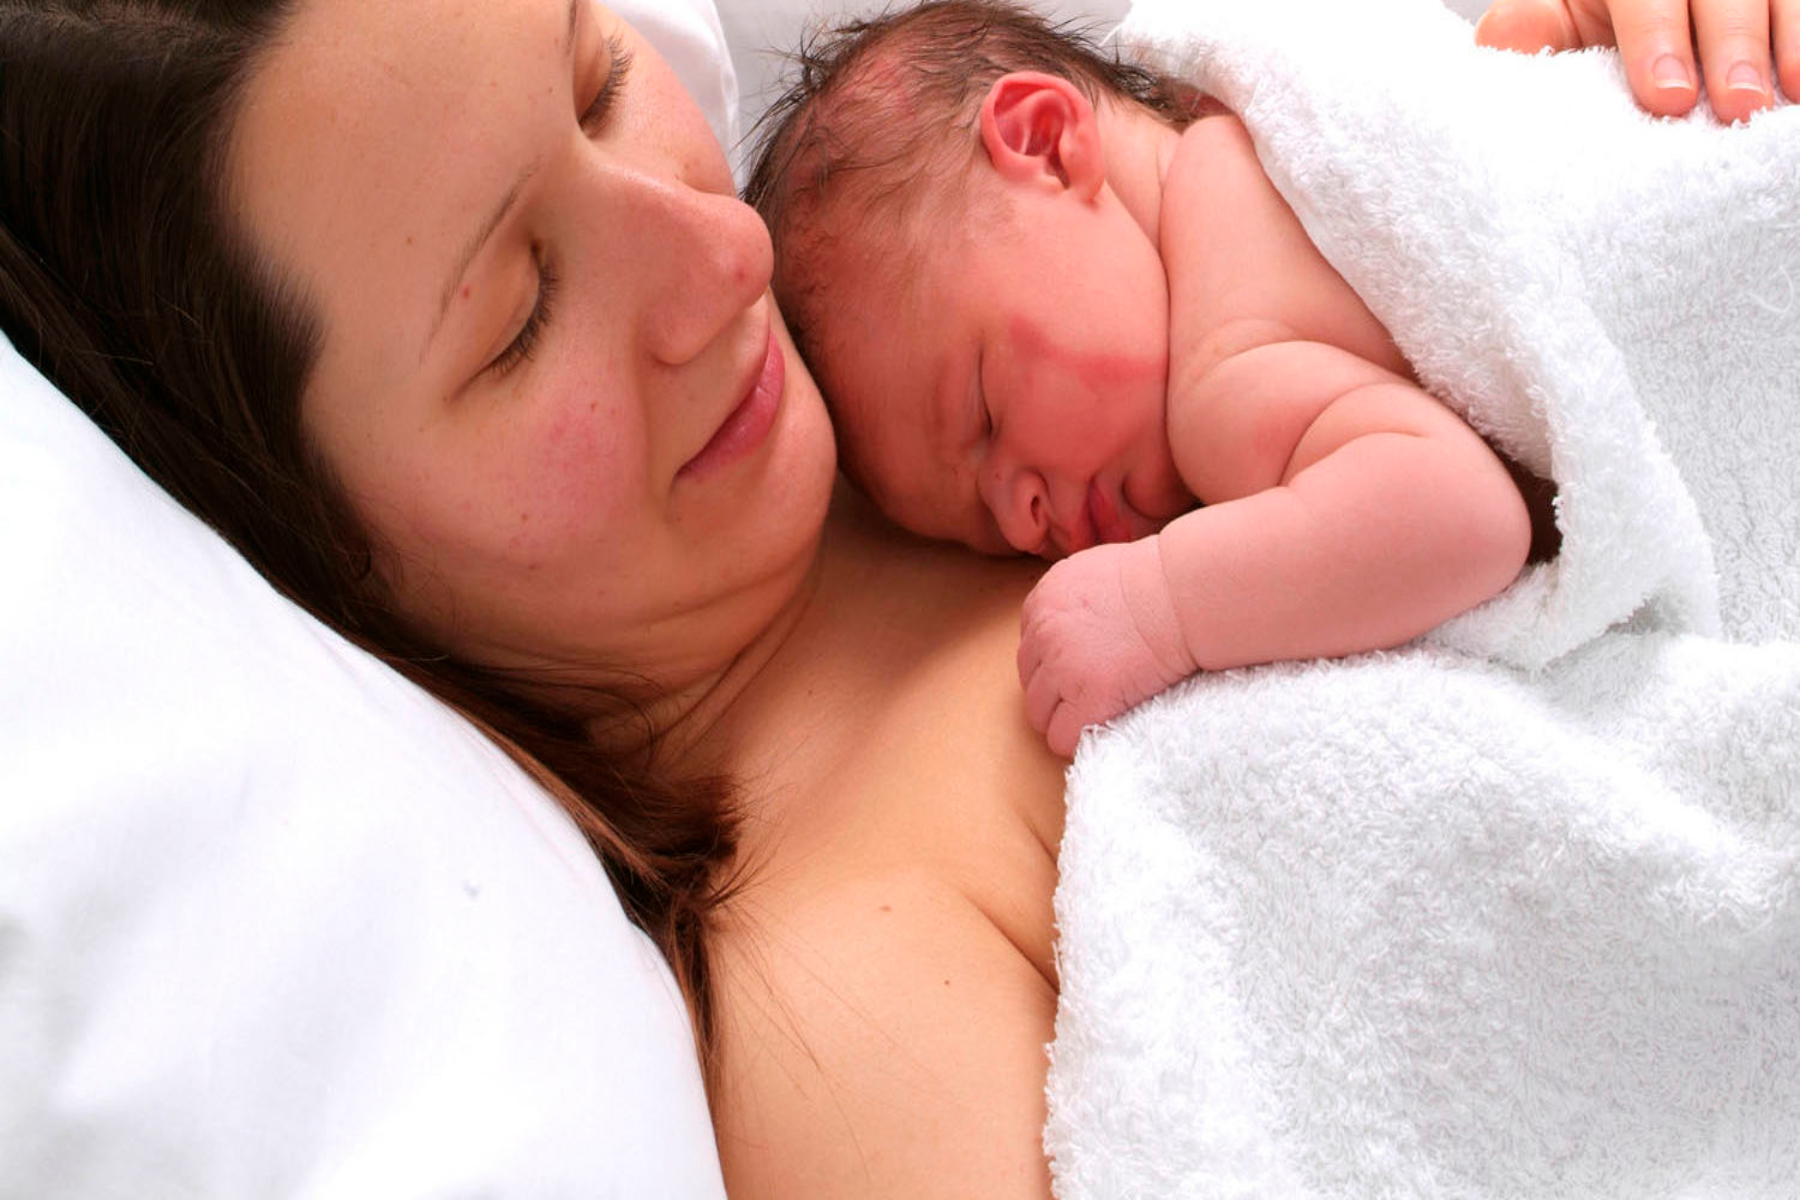 Καισαρική: Πόσο σημαντική είναι η πρώτη επαφή της μητέρας με το μωρό κατά τη διάρκεια της καισαρικής τομής